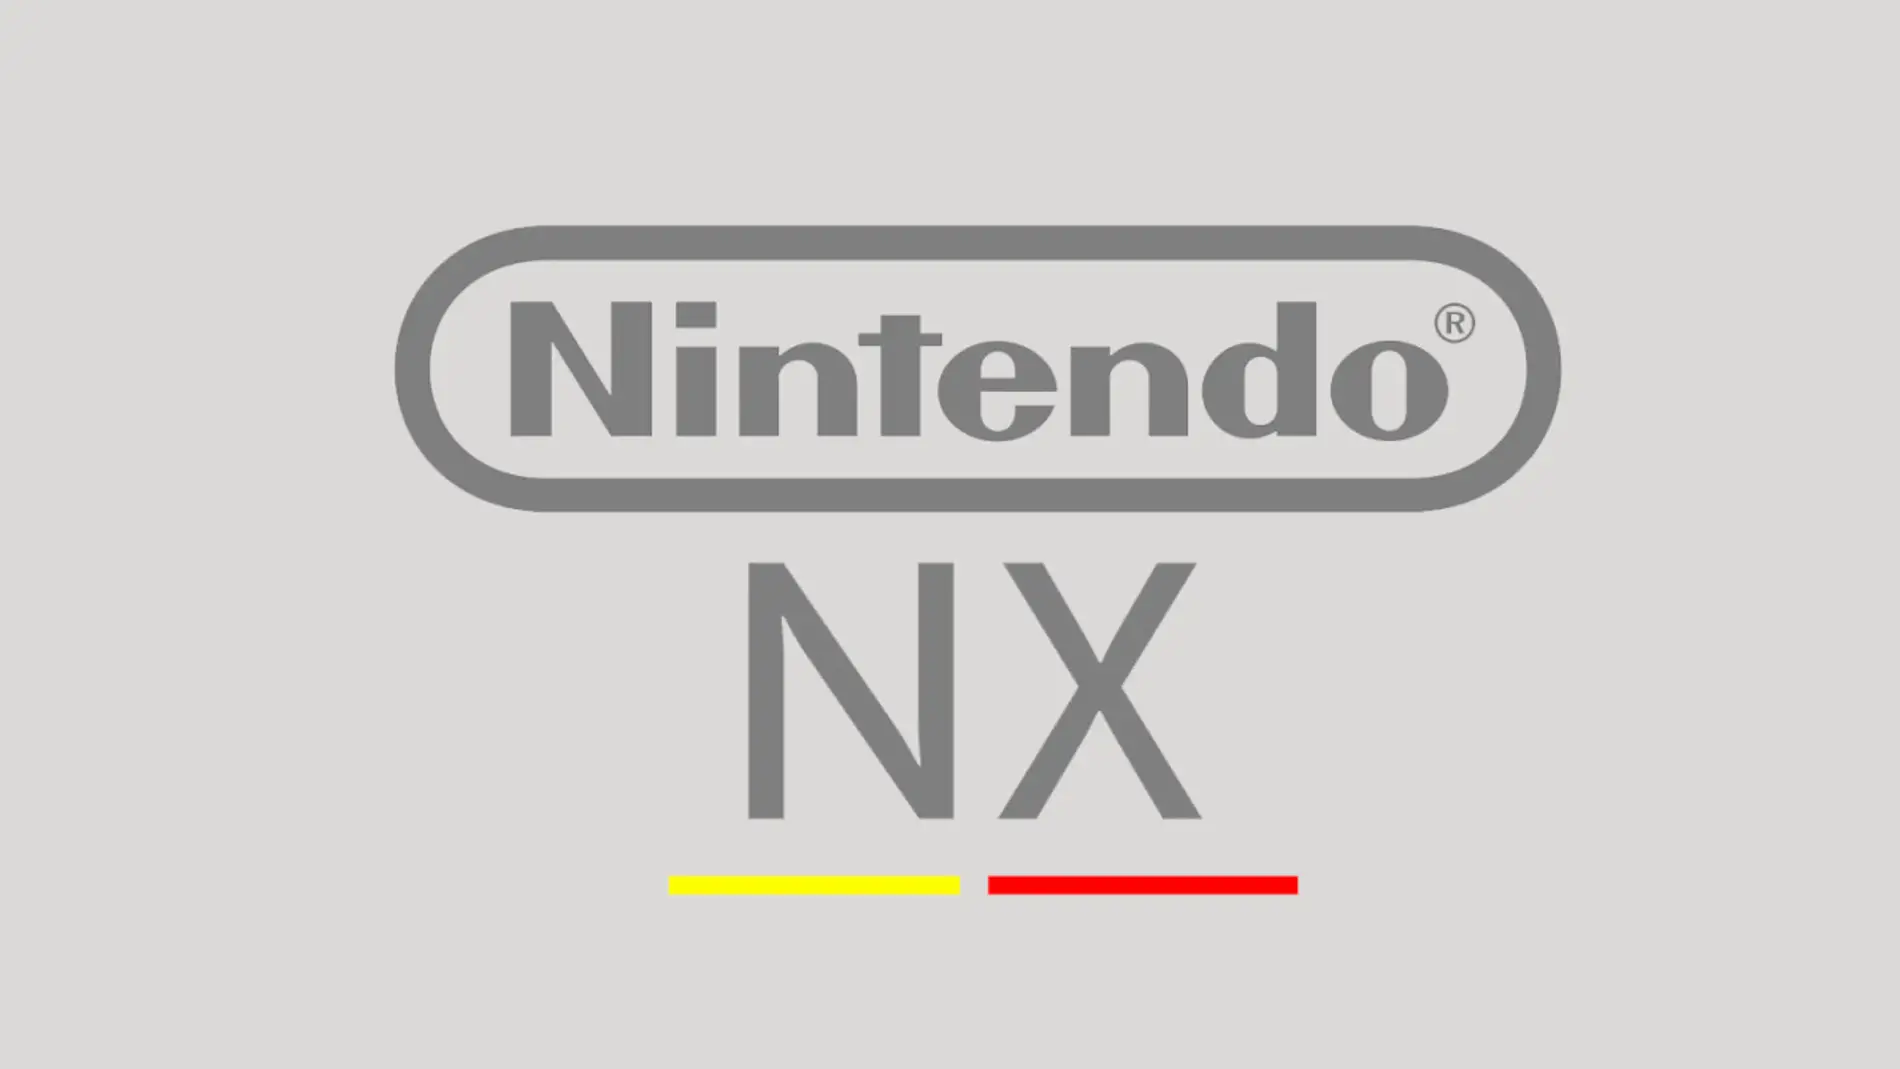 Logotipo de Nintendo NX hecho por fans